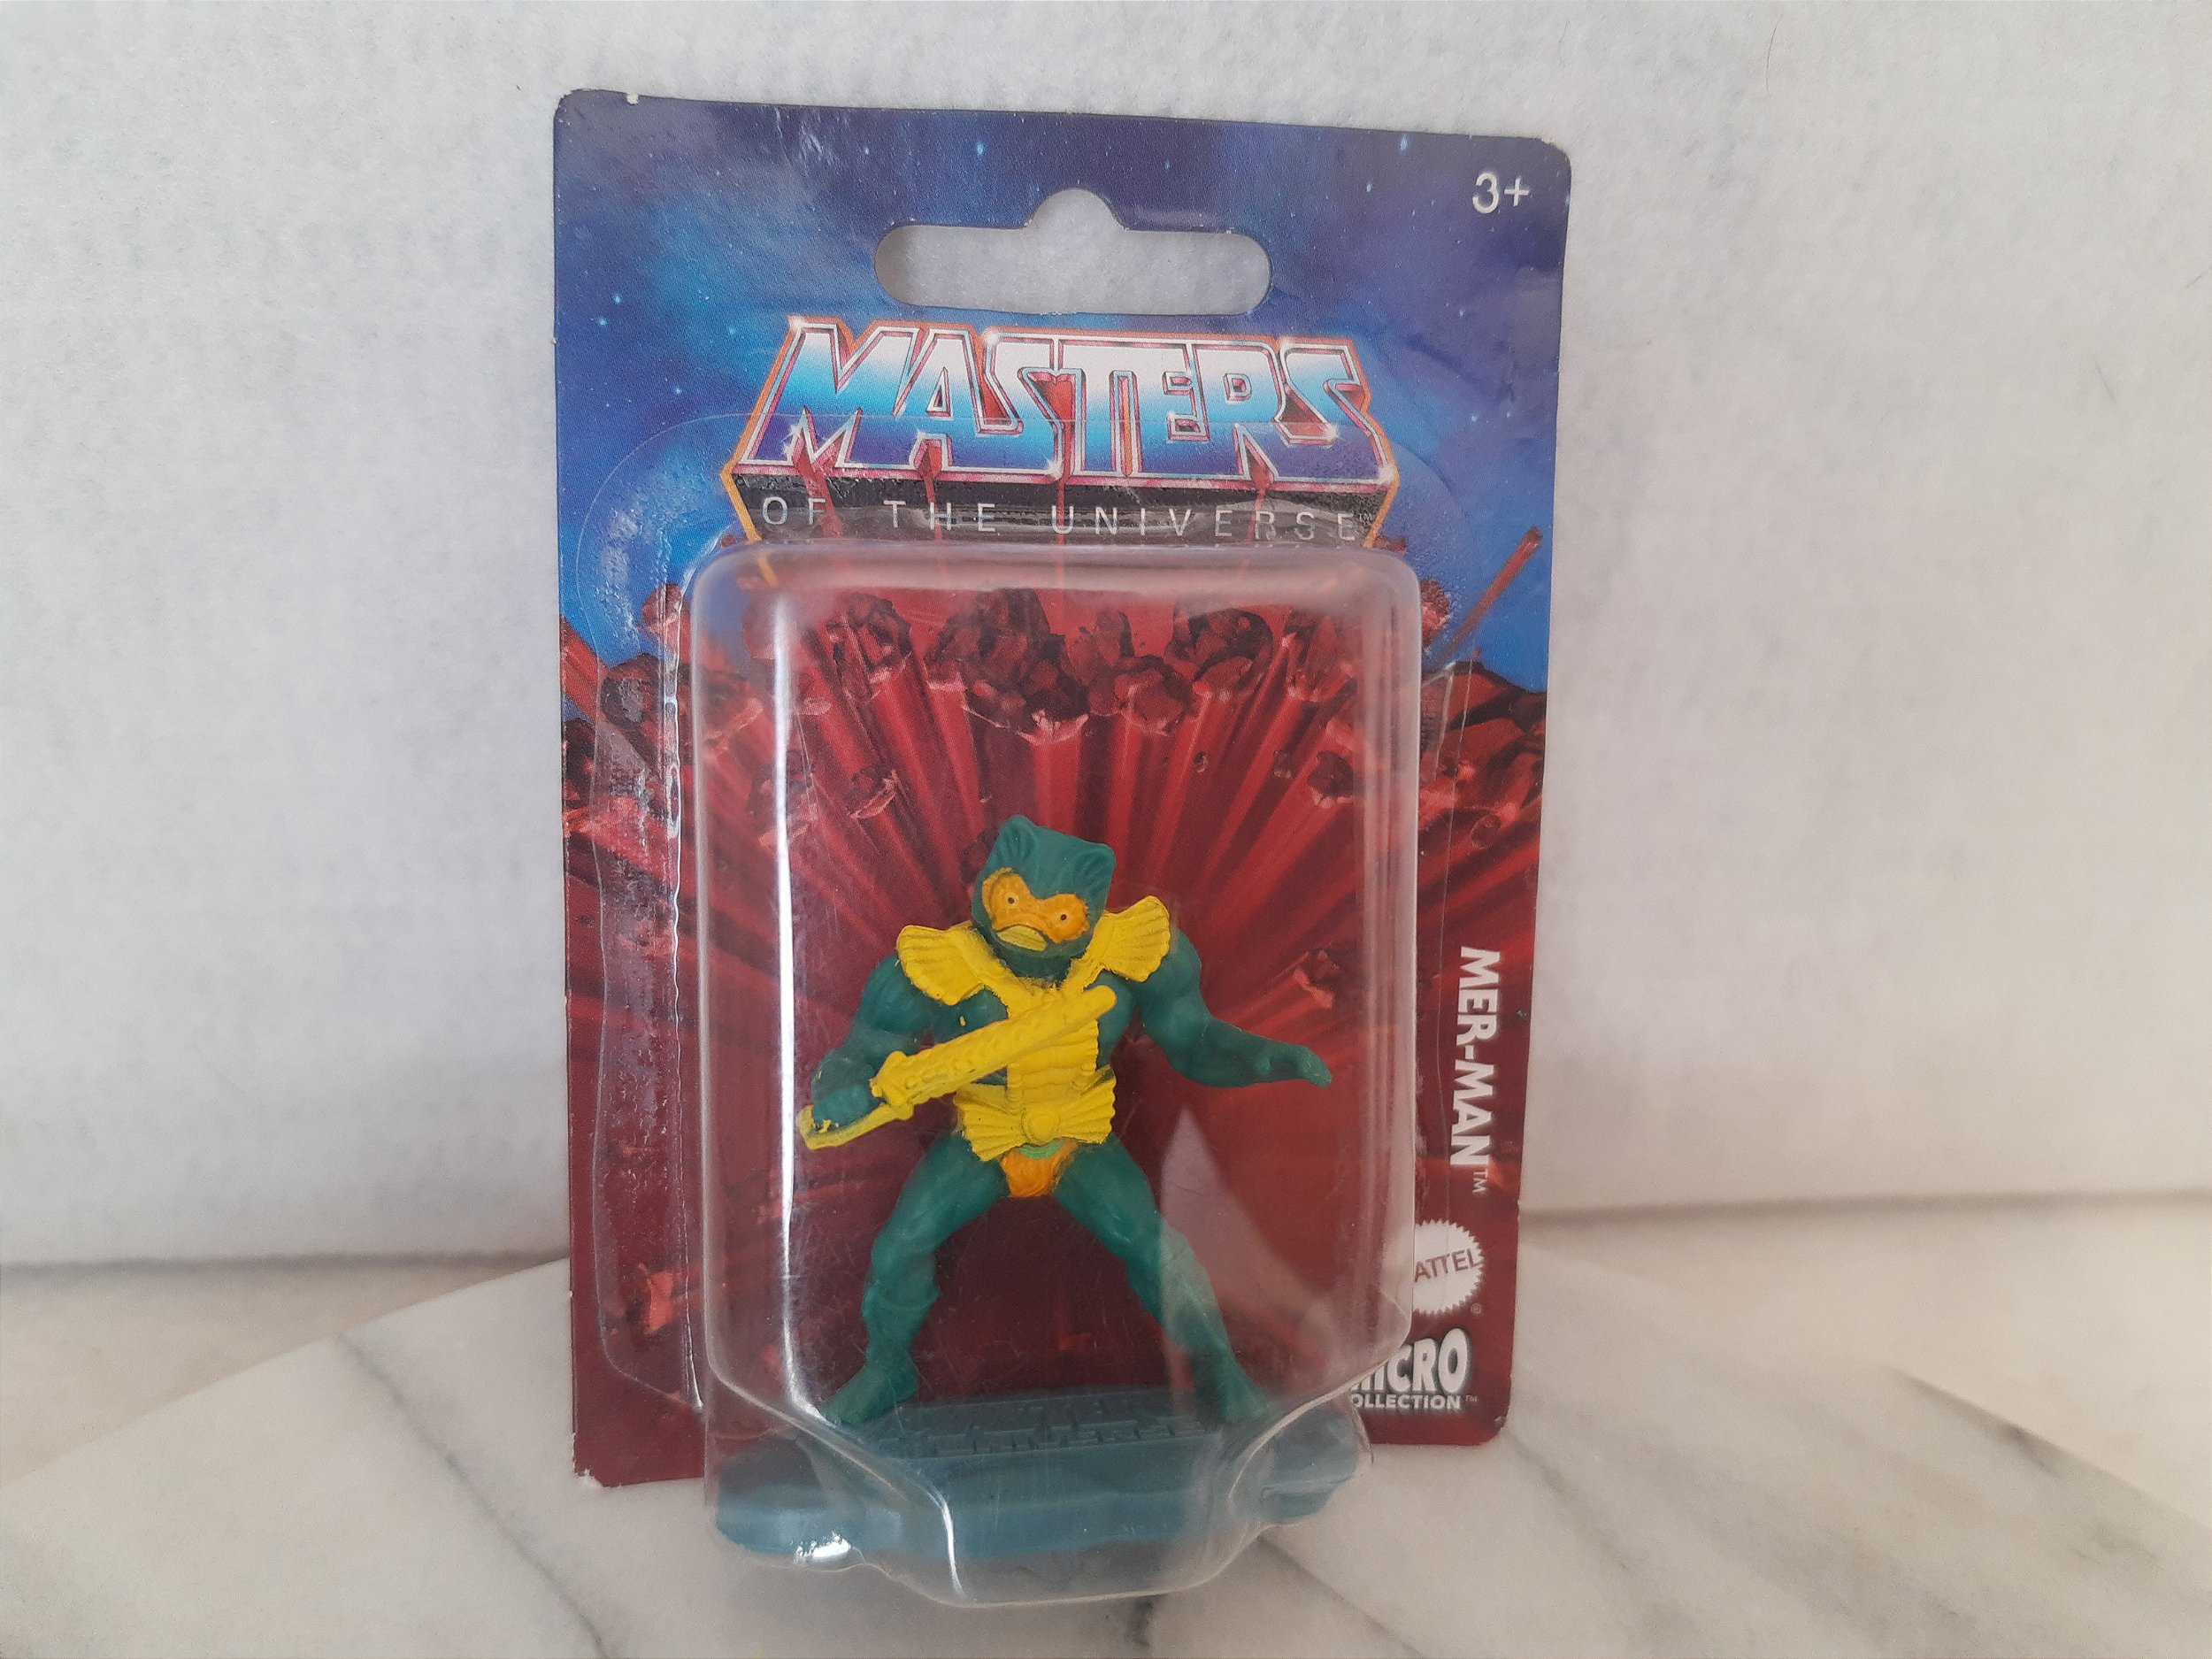 Preços baixos em Mattel o Rei e Masters Of The Universe Boneco de ação  acessórios